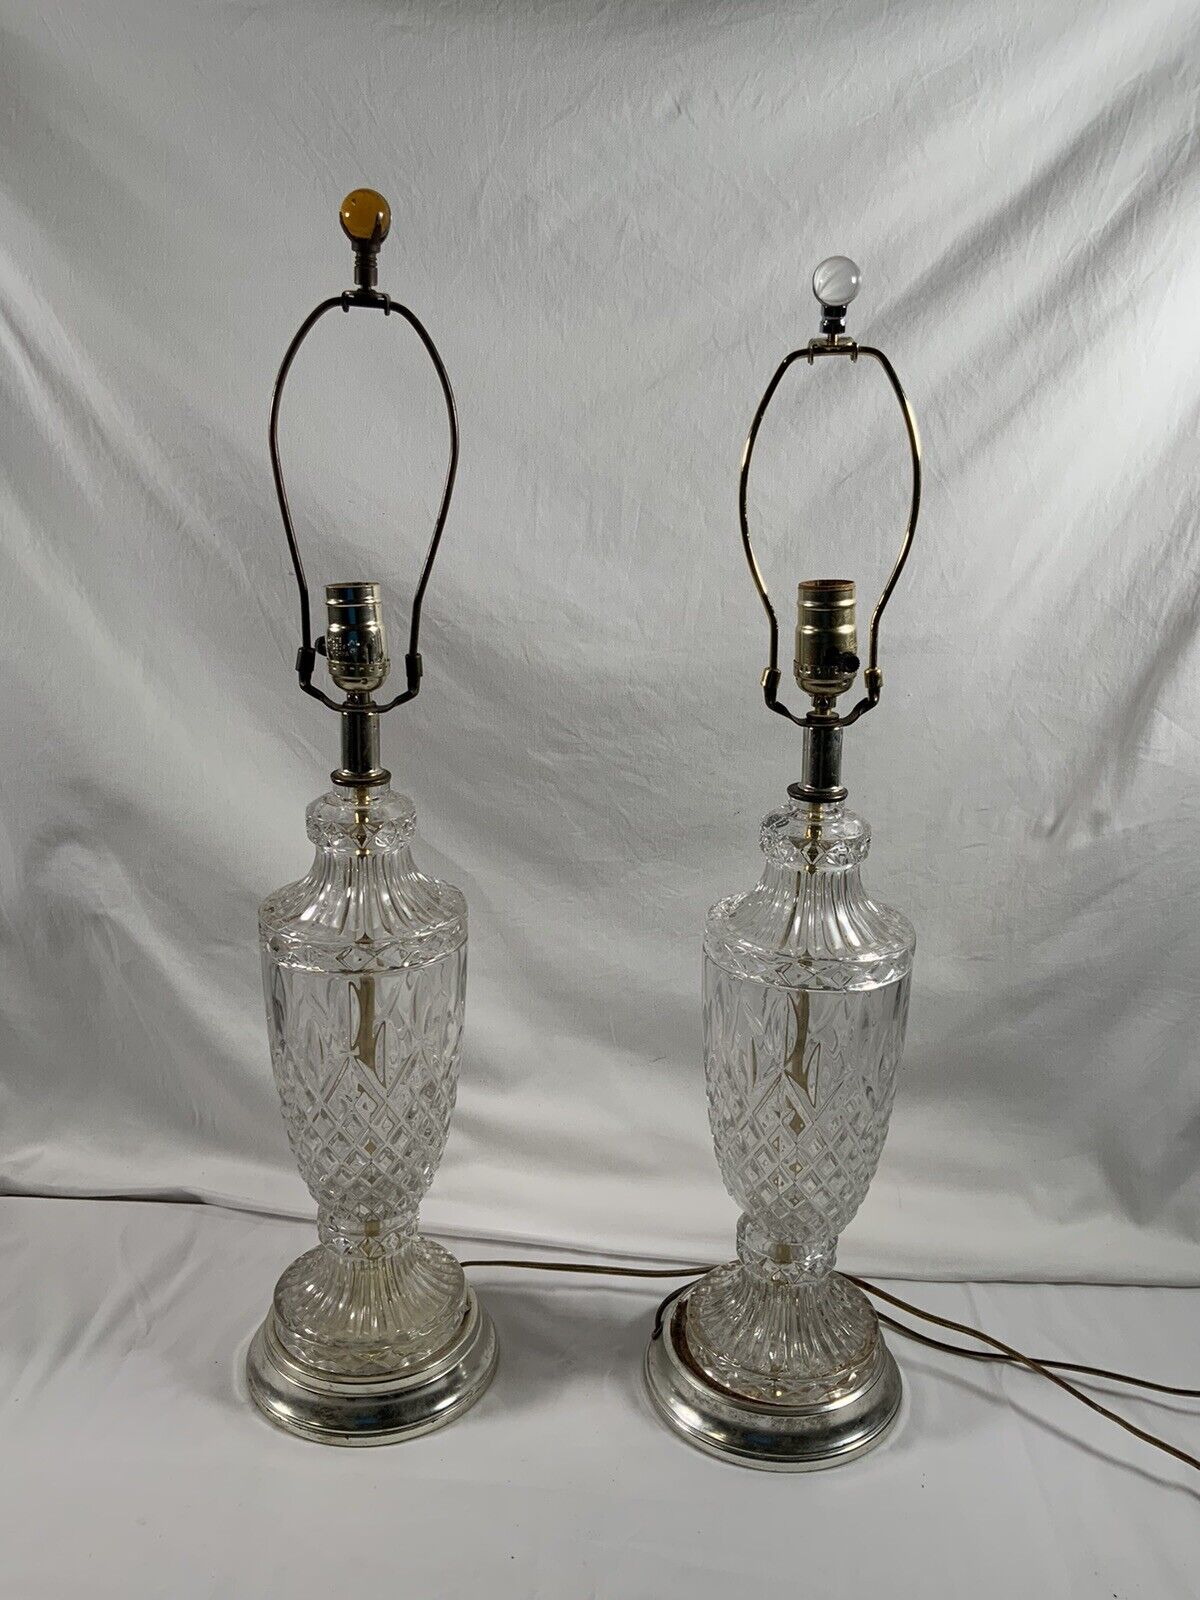 Pair of Vintage Crystal Cut Lamps #29 Read